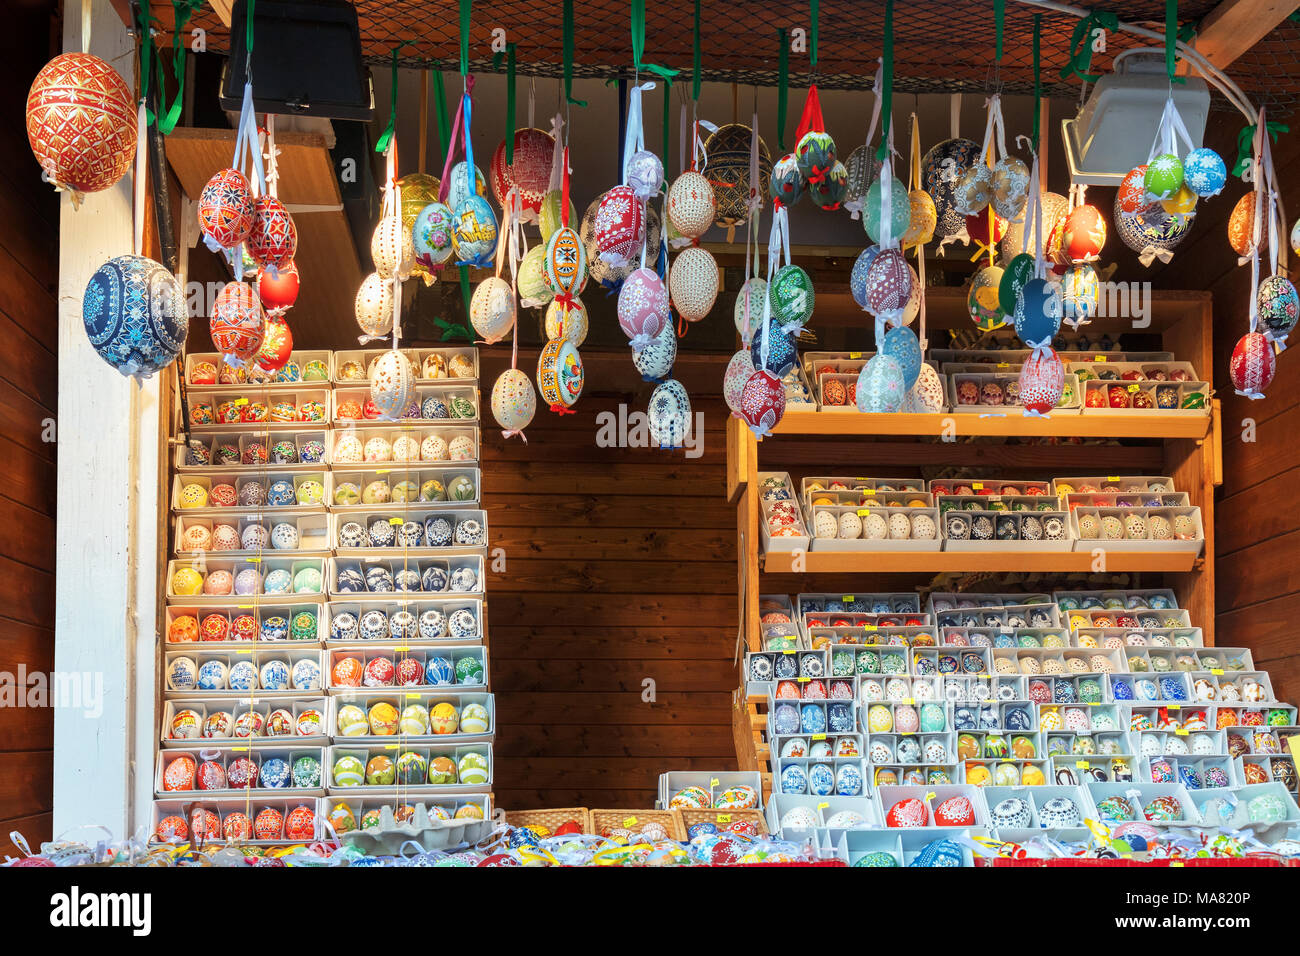 Large choix d'œufs de Pâques, souvenirs traditionnels dans le kiosque du marché de la rue pendant la célébration de Pâques en Europe centrale. Compartiments pleins Banque D'Images